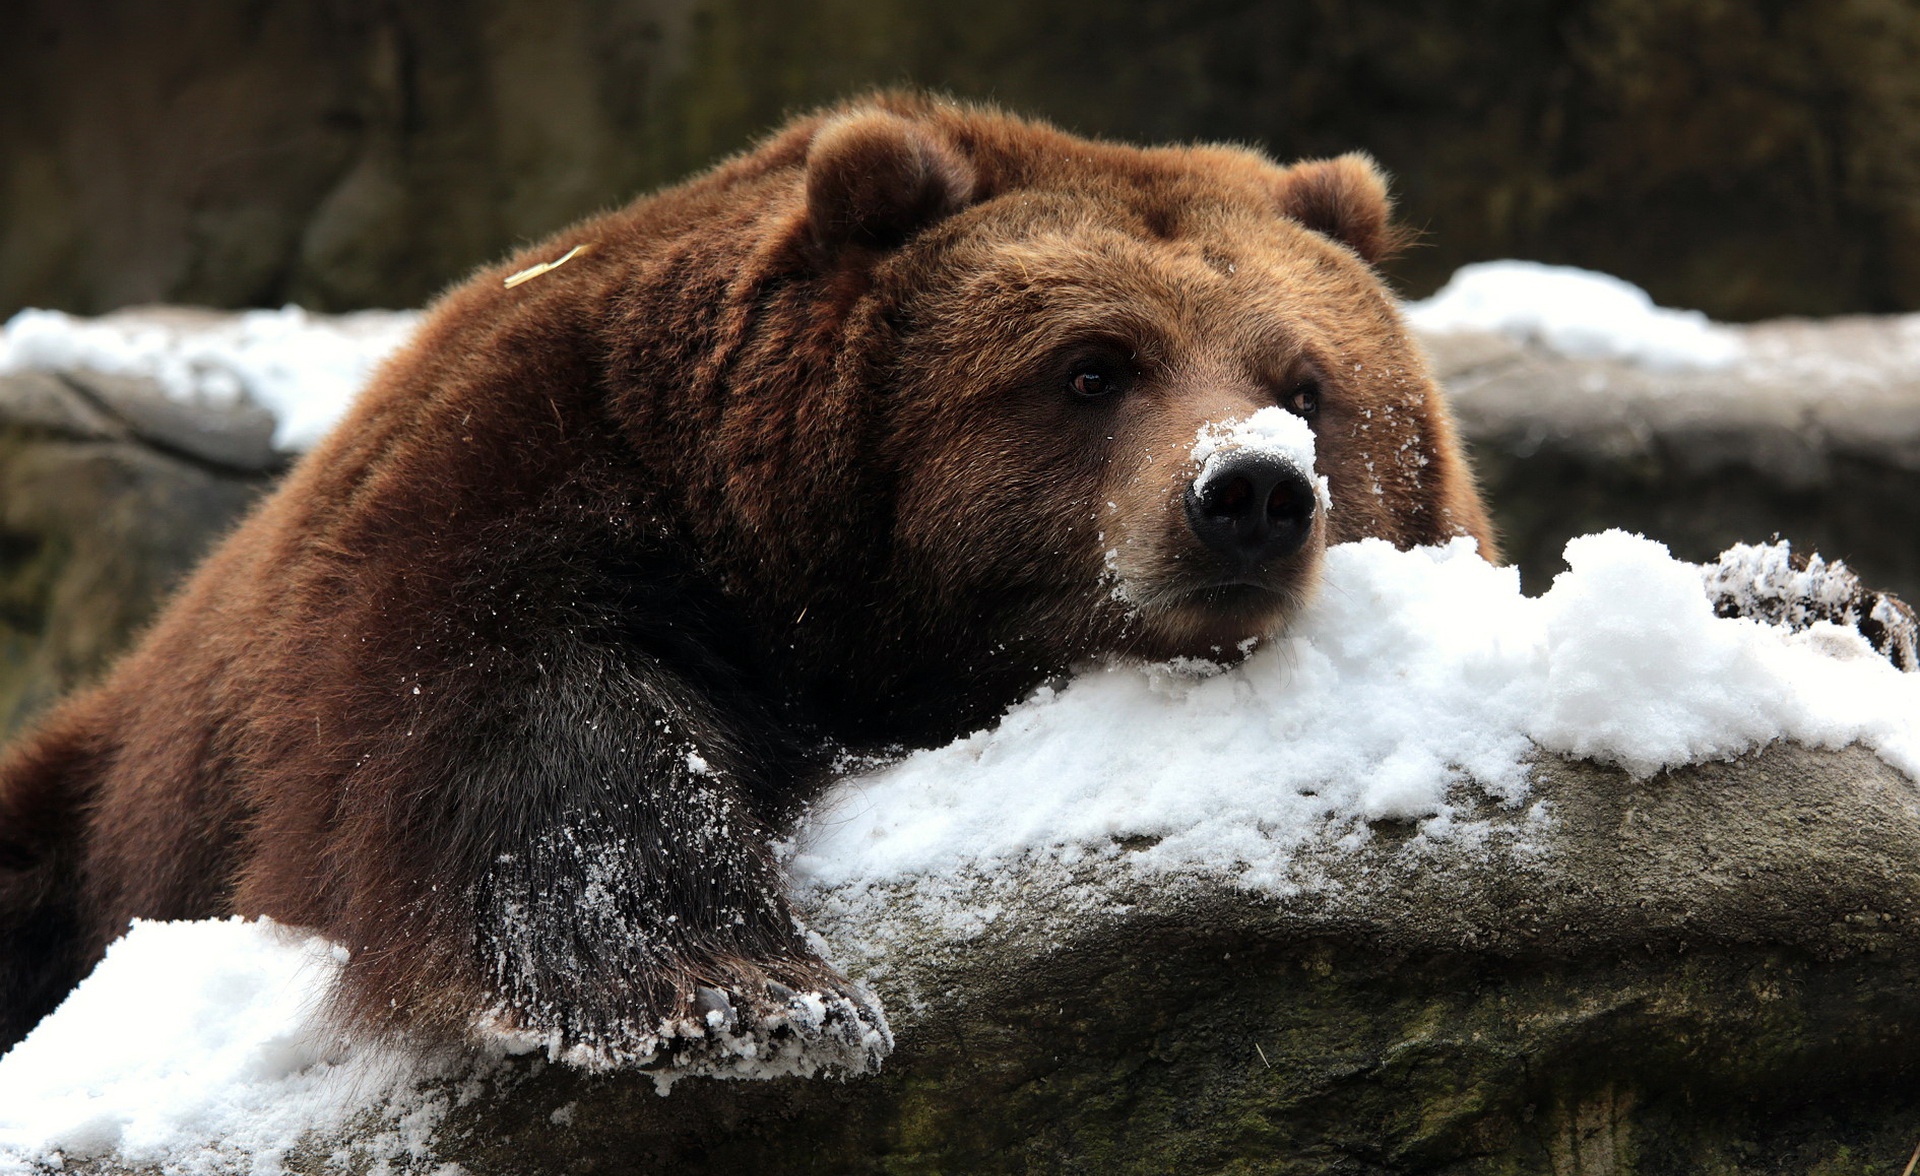 Скачать обои бесплатно Животные, Снег, Медведи, Медведь, Отдых картинка на рабочий стол ПК